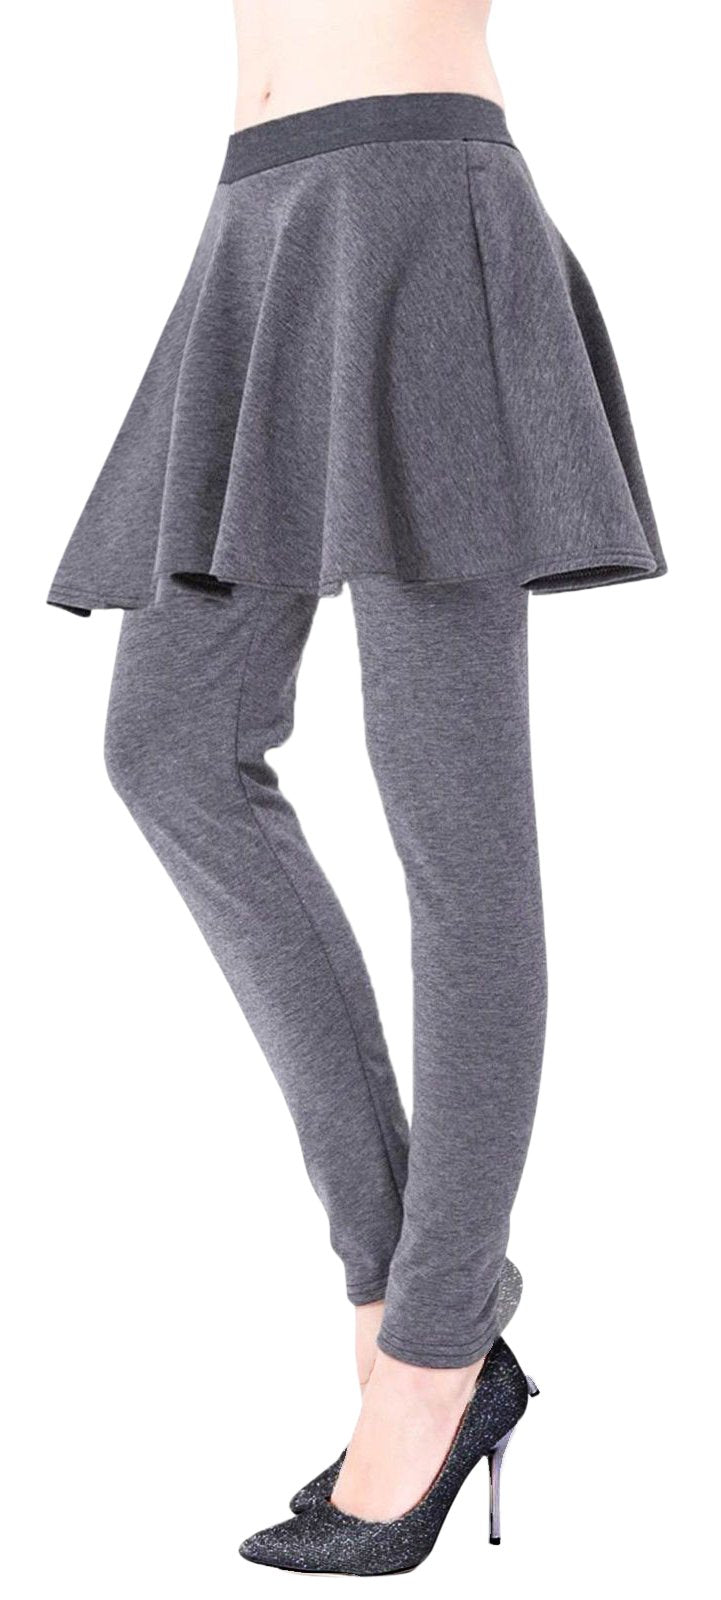 A7619-Skirt-Legging-Grey-S/M-RK